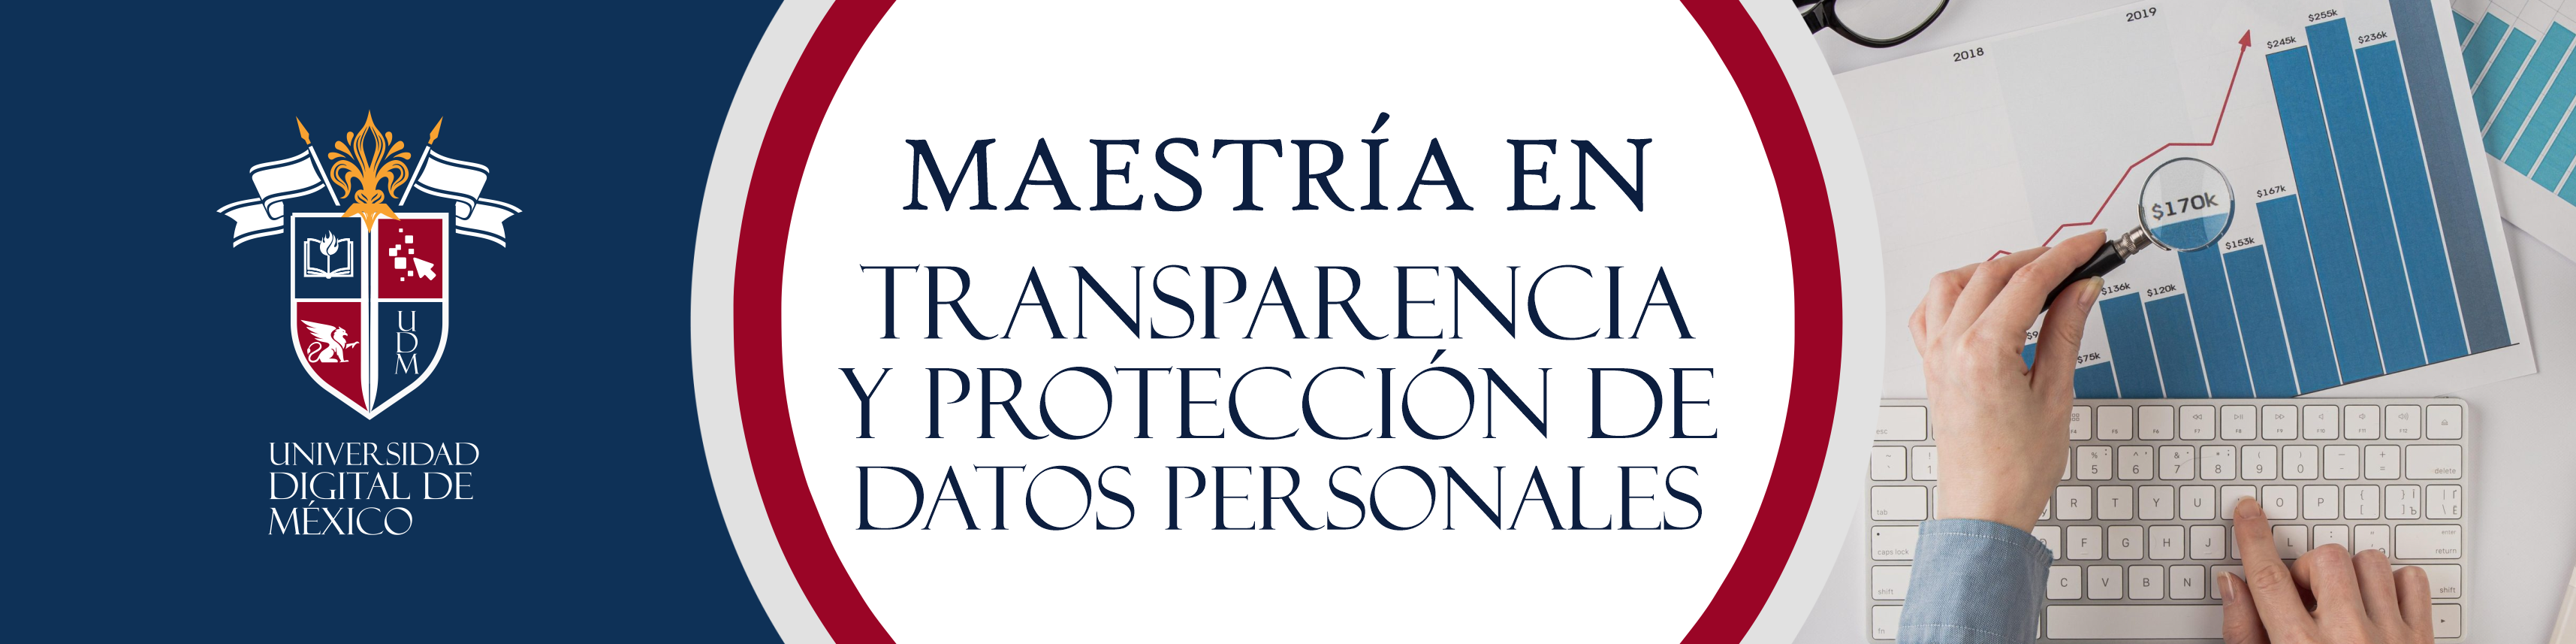 Maestría en Transparencia y Protección de Datos Personales.